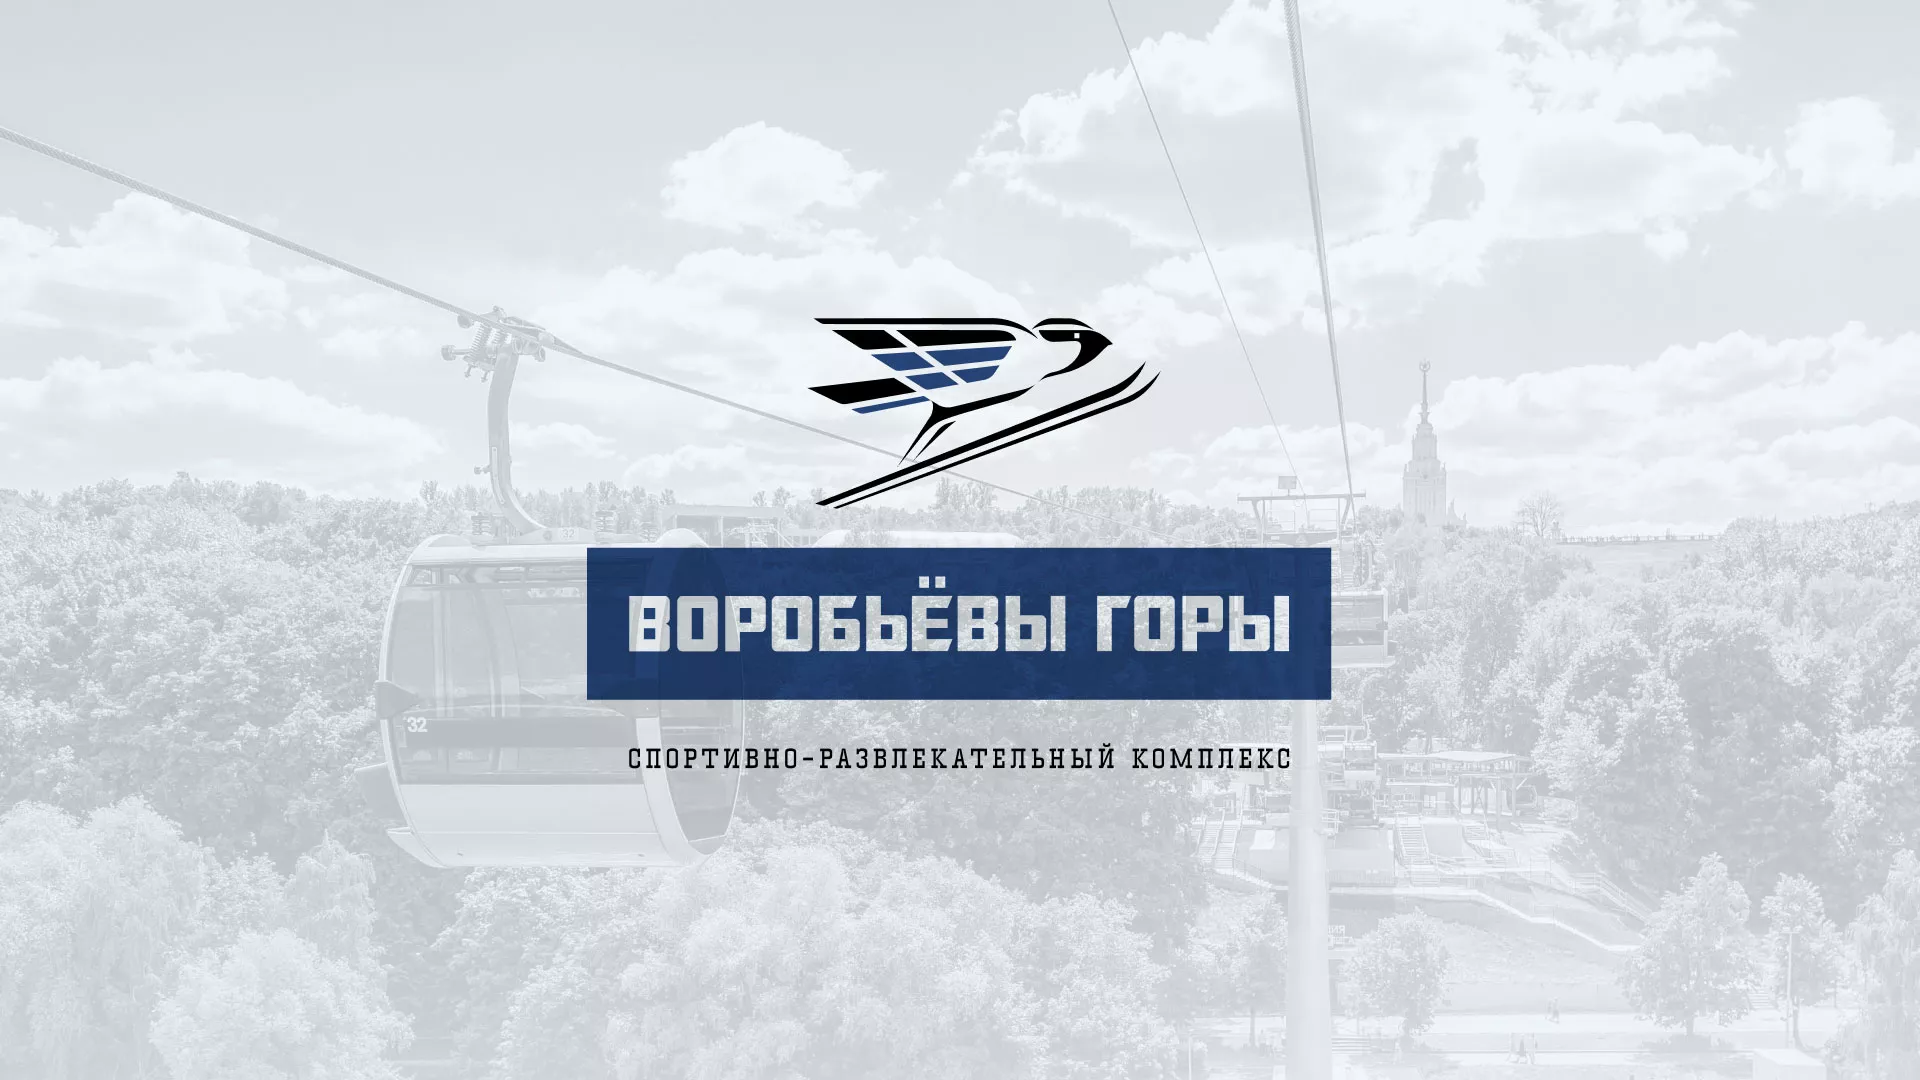 Разработка сайта в Приозерске для спортивно-развлекательного комплекса «Воробьёвы горы»